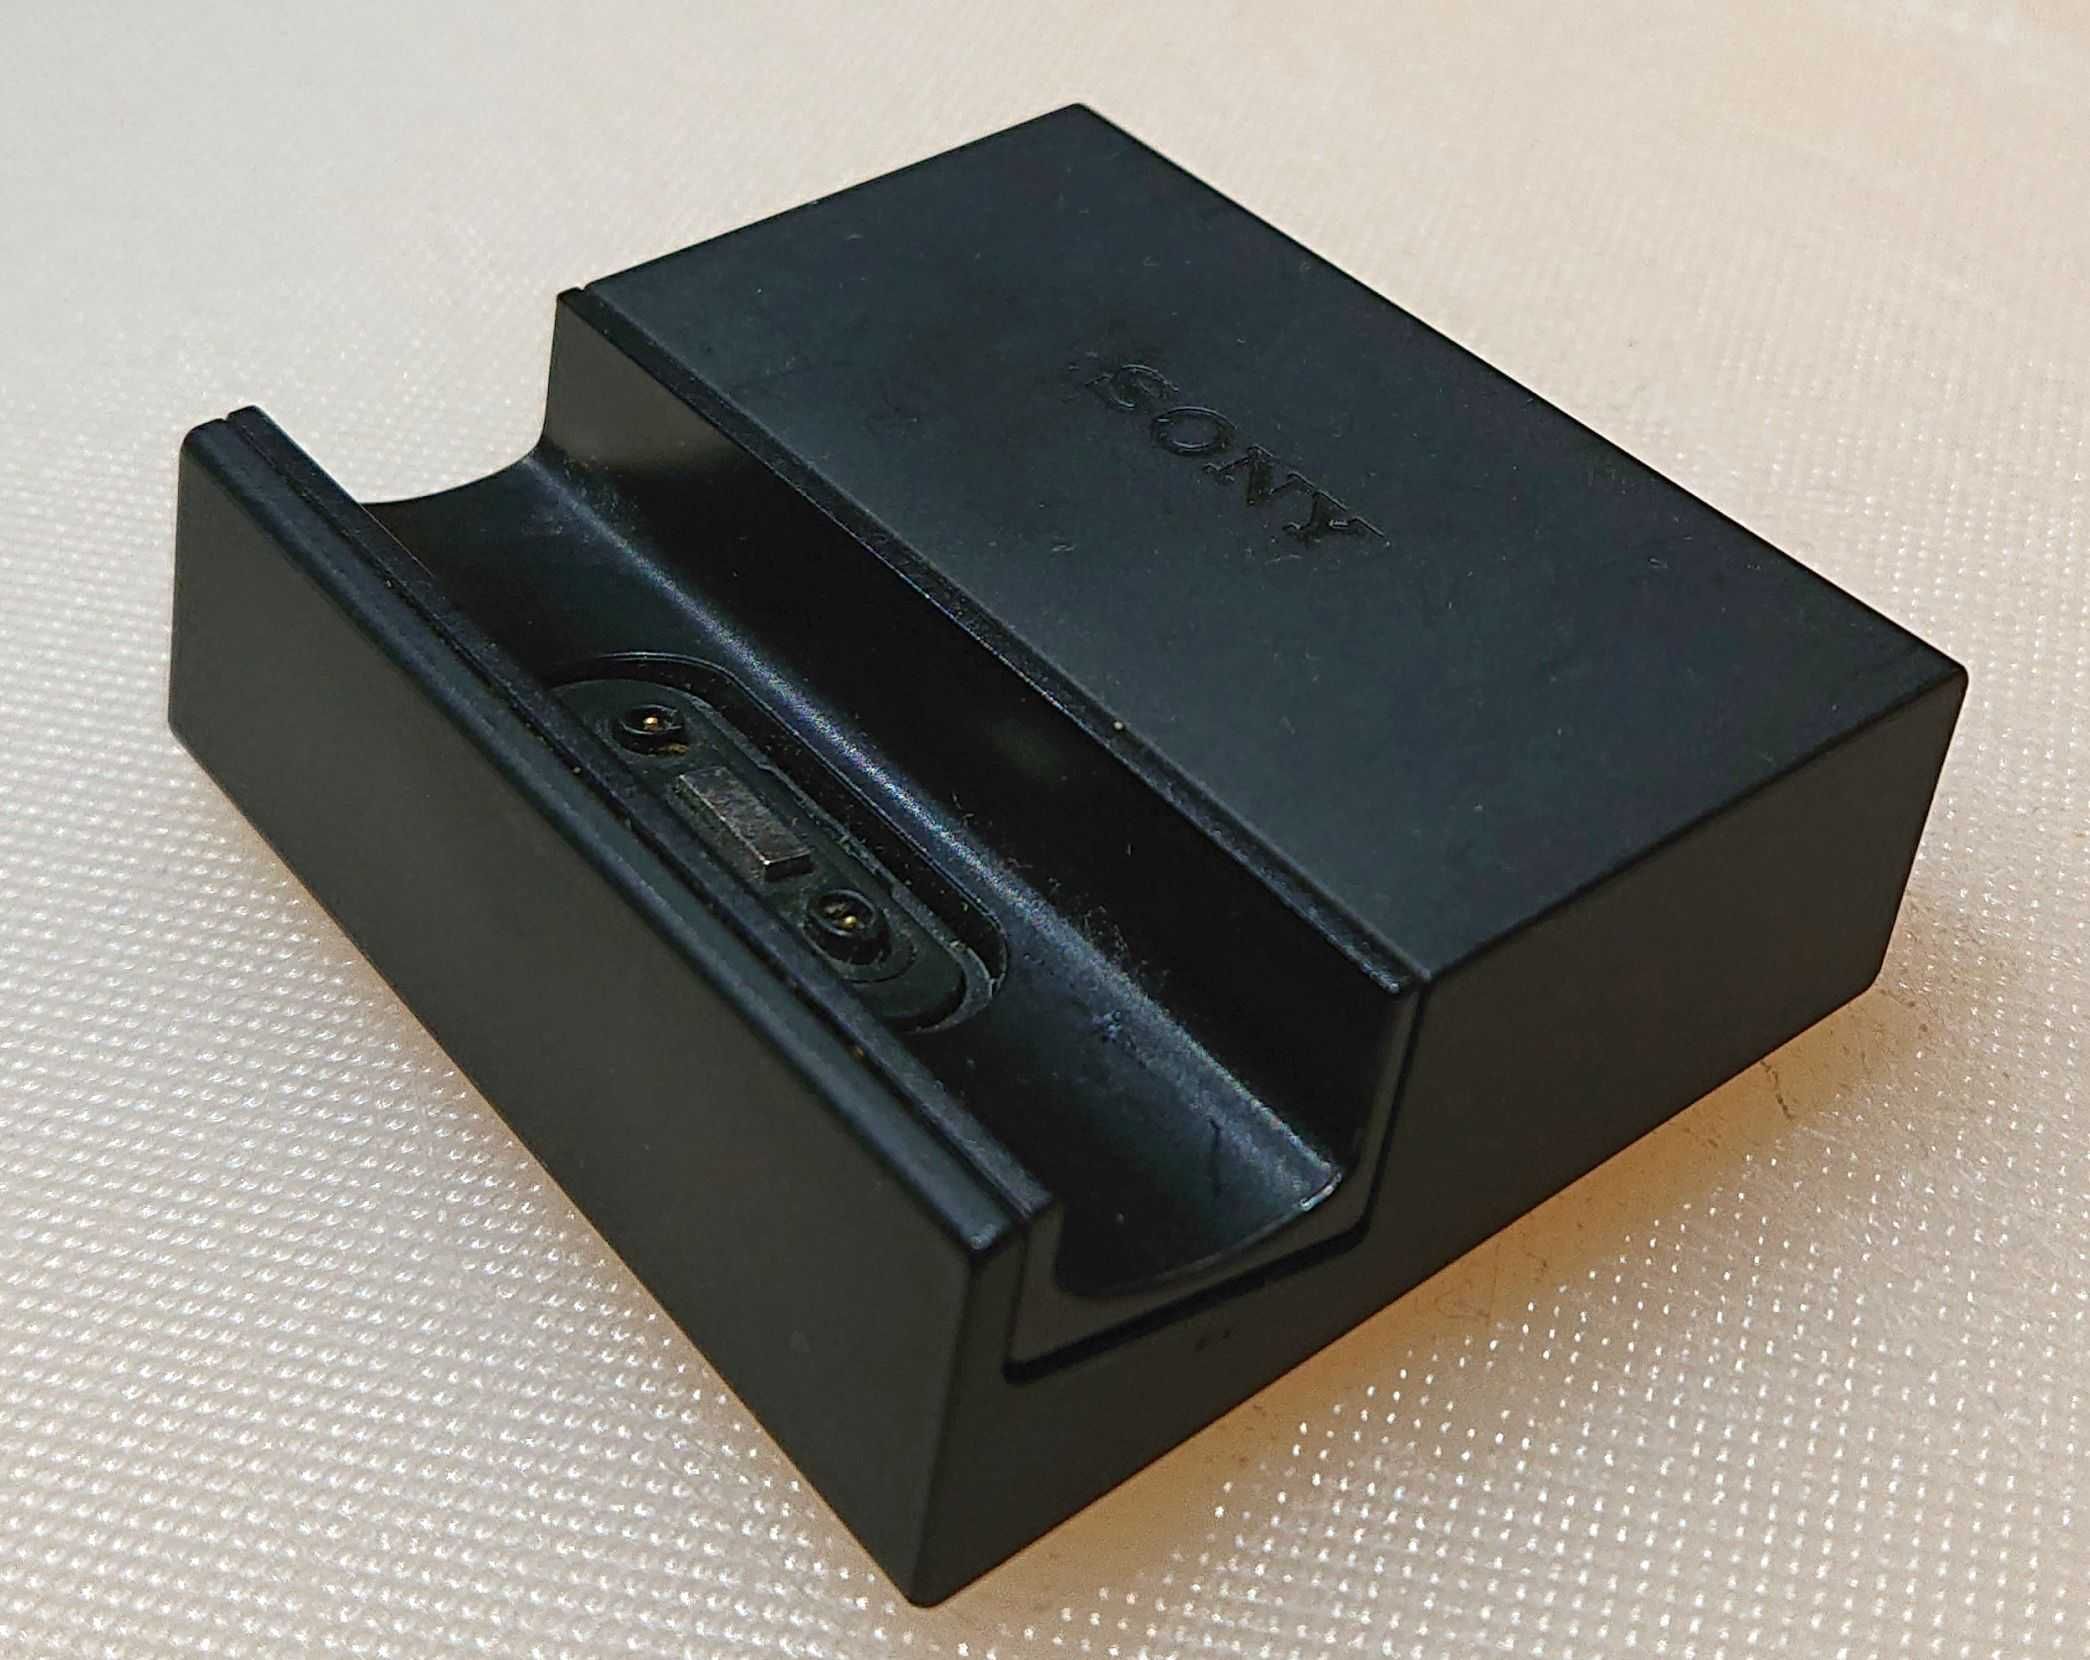 Podstawka ładowarka do telefonu SONY ZX3 (model sprzed około 8 lat)